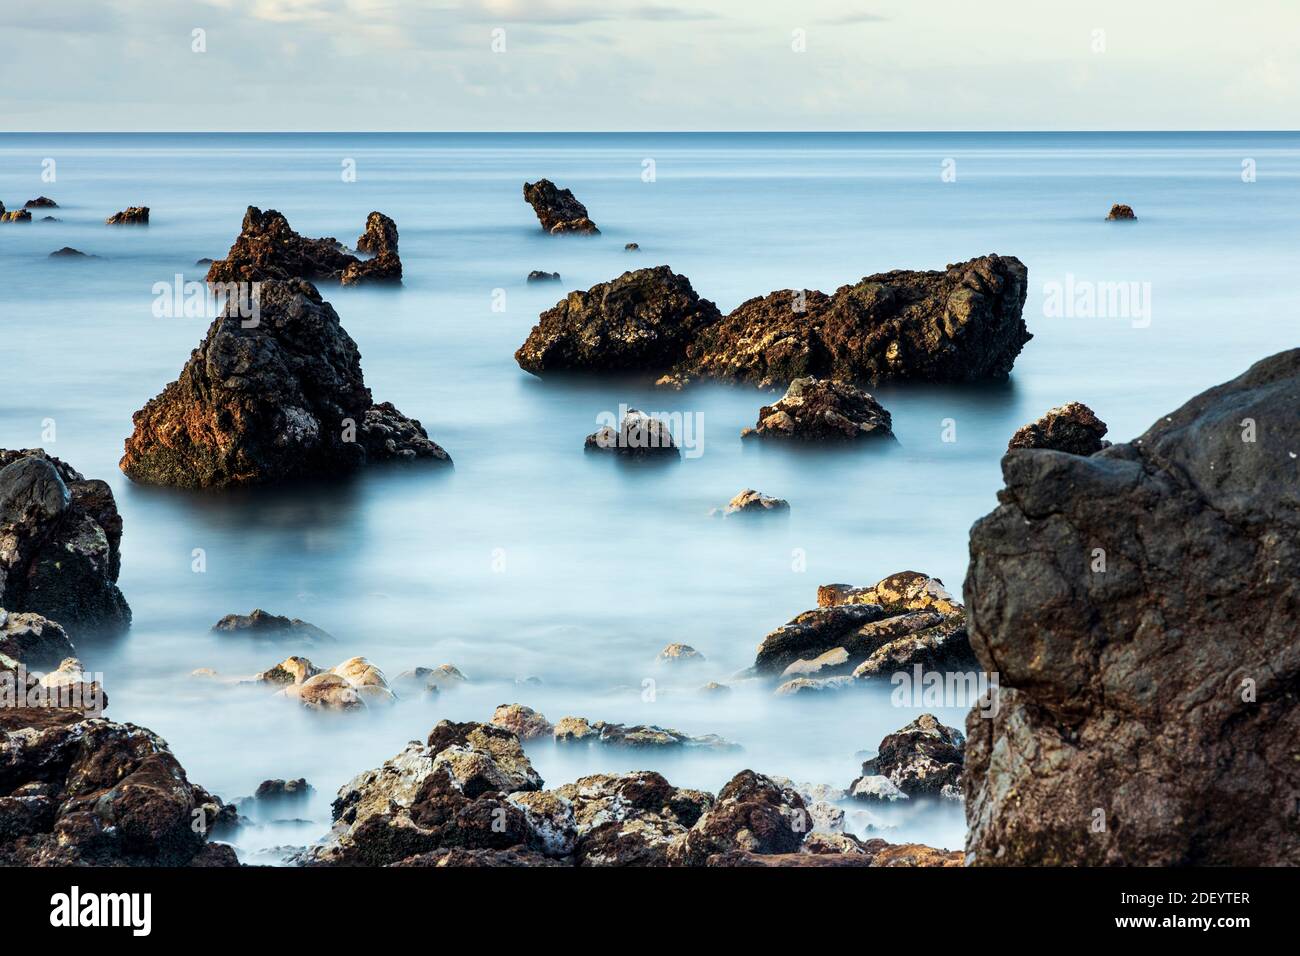 Lunga esposizione al mare all'alba con rocce a Playa san Juan, Tenerife, Isole Canarie, Spagna. Foto Stock